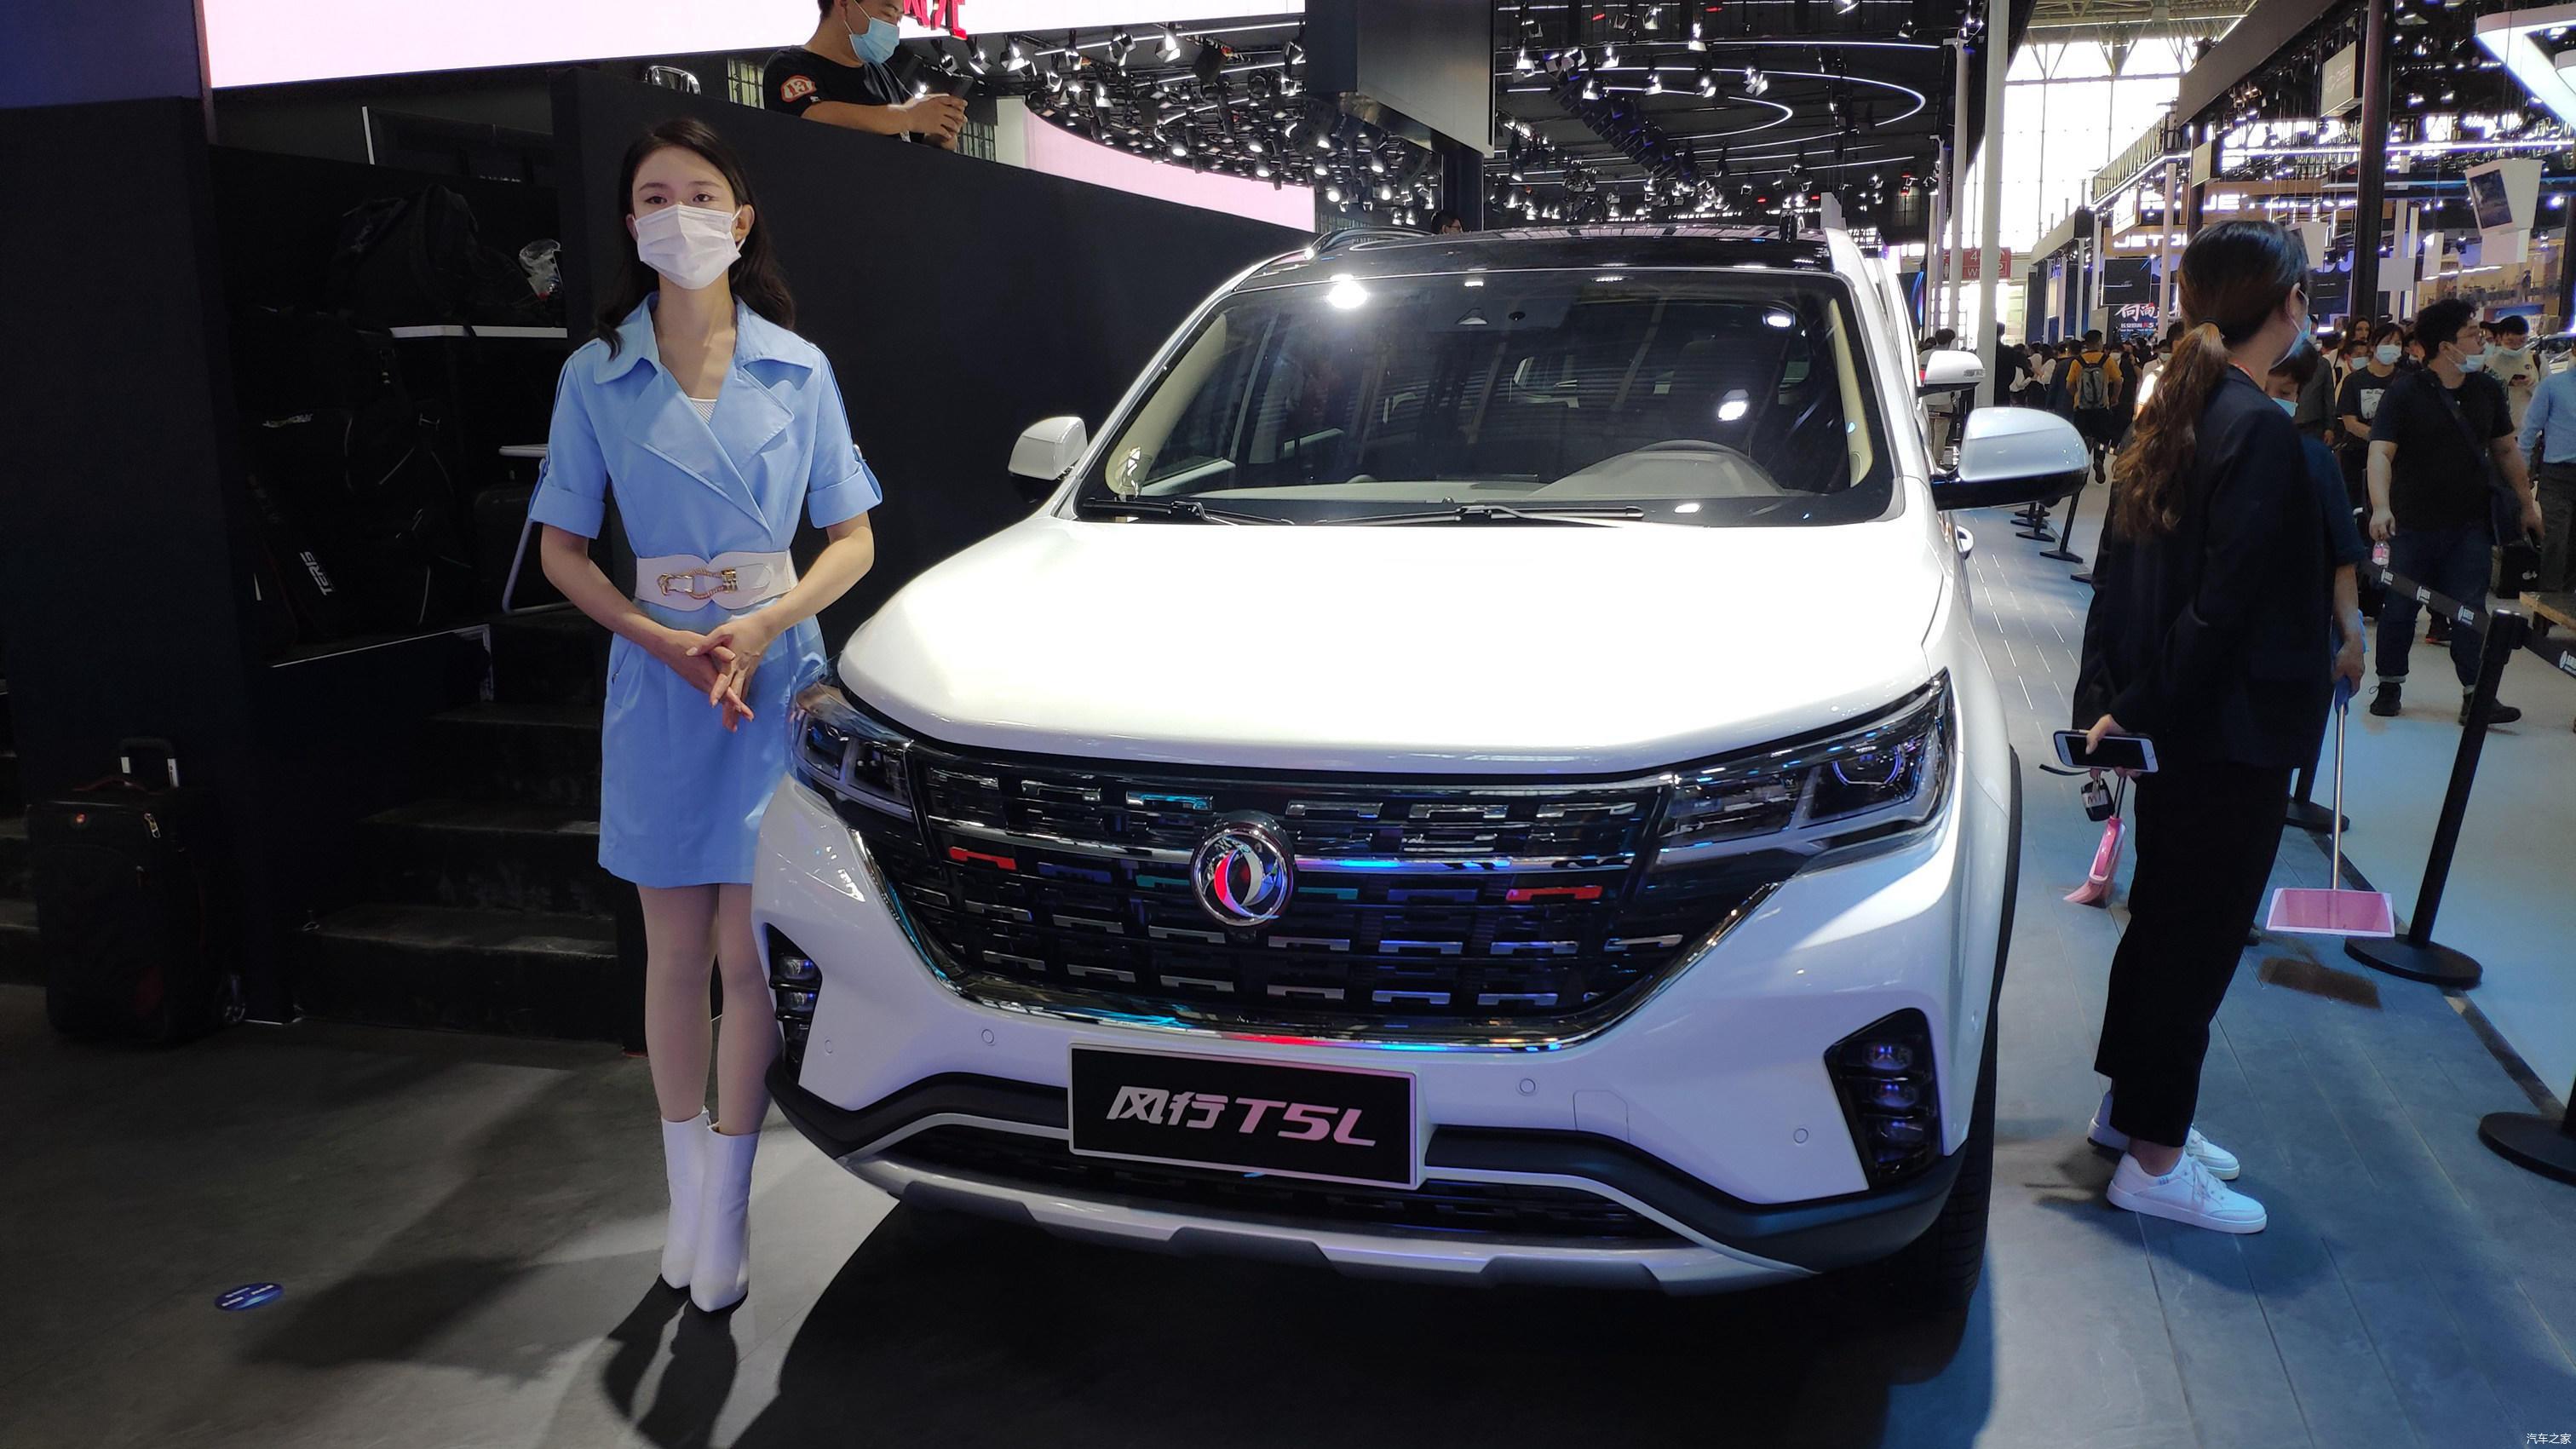 2020年北京车展:新款东风风行t5l实车